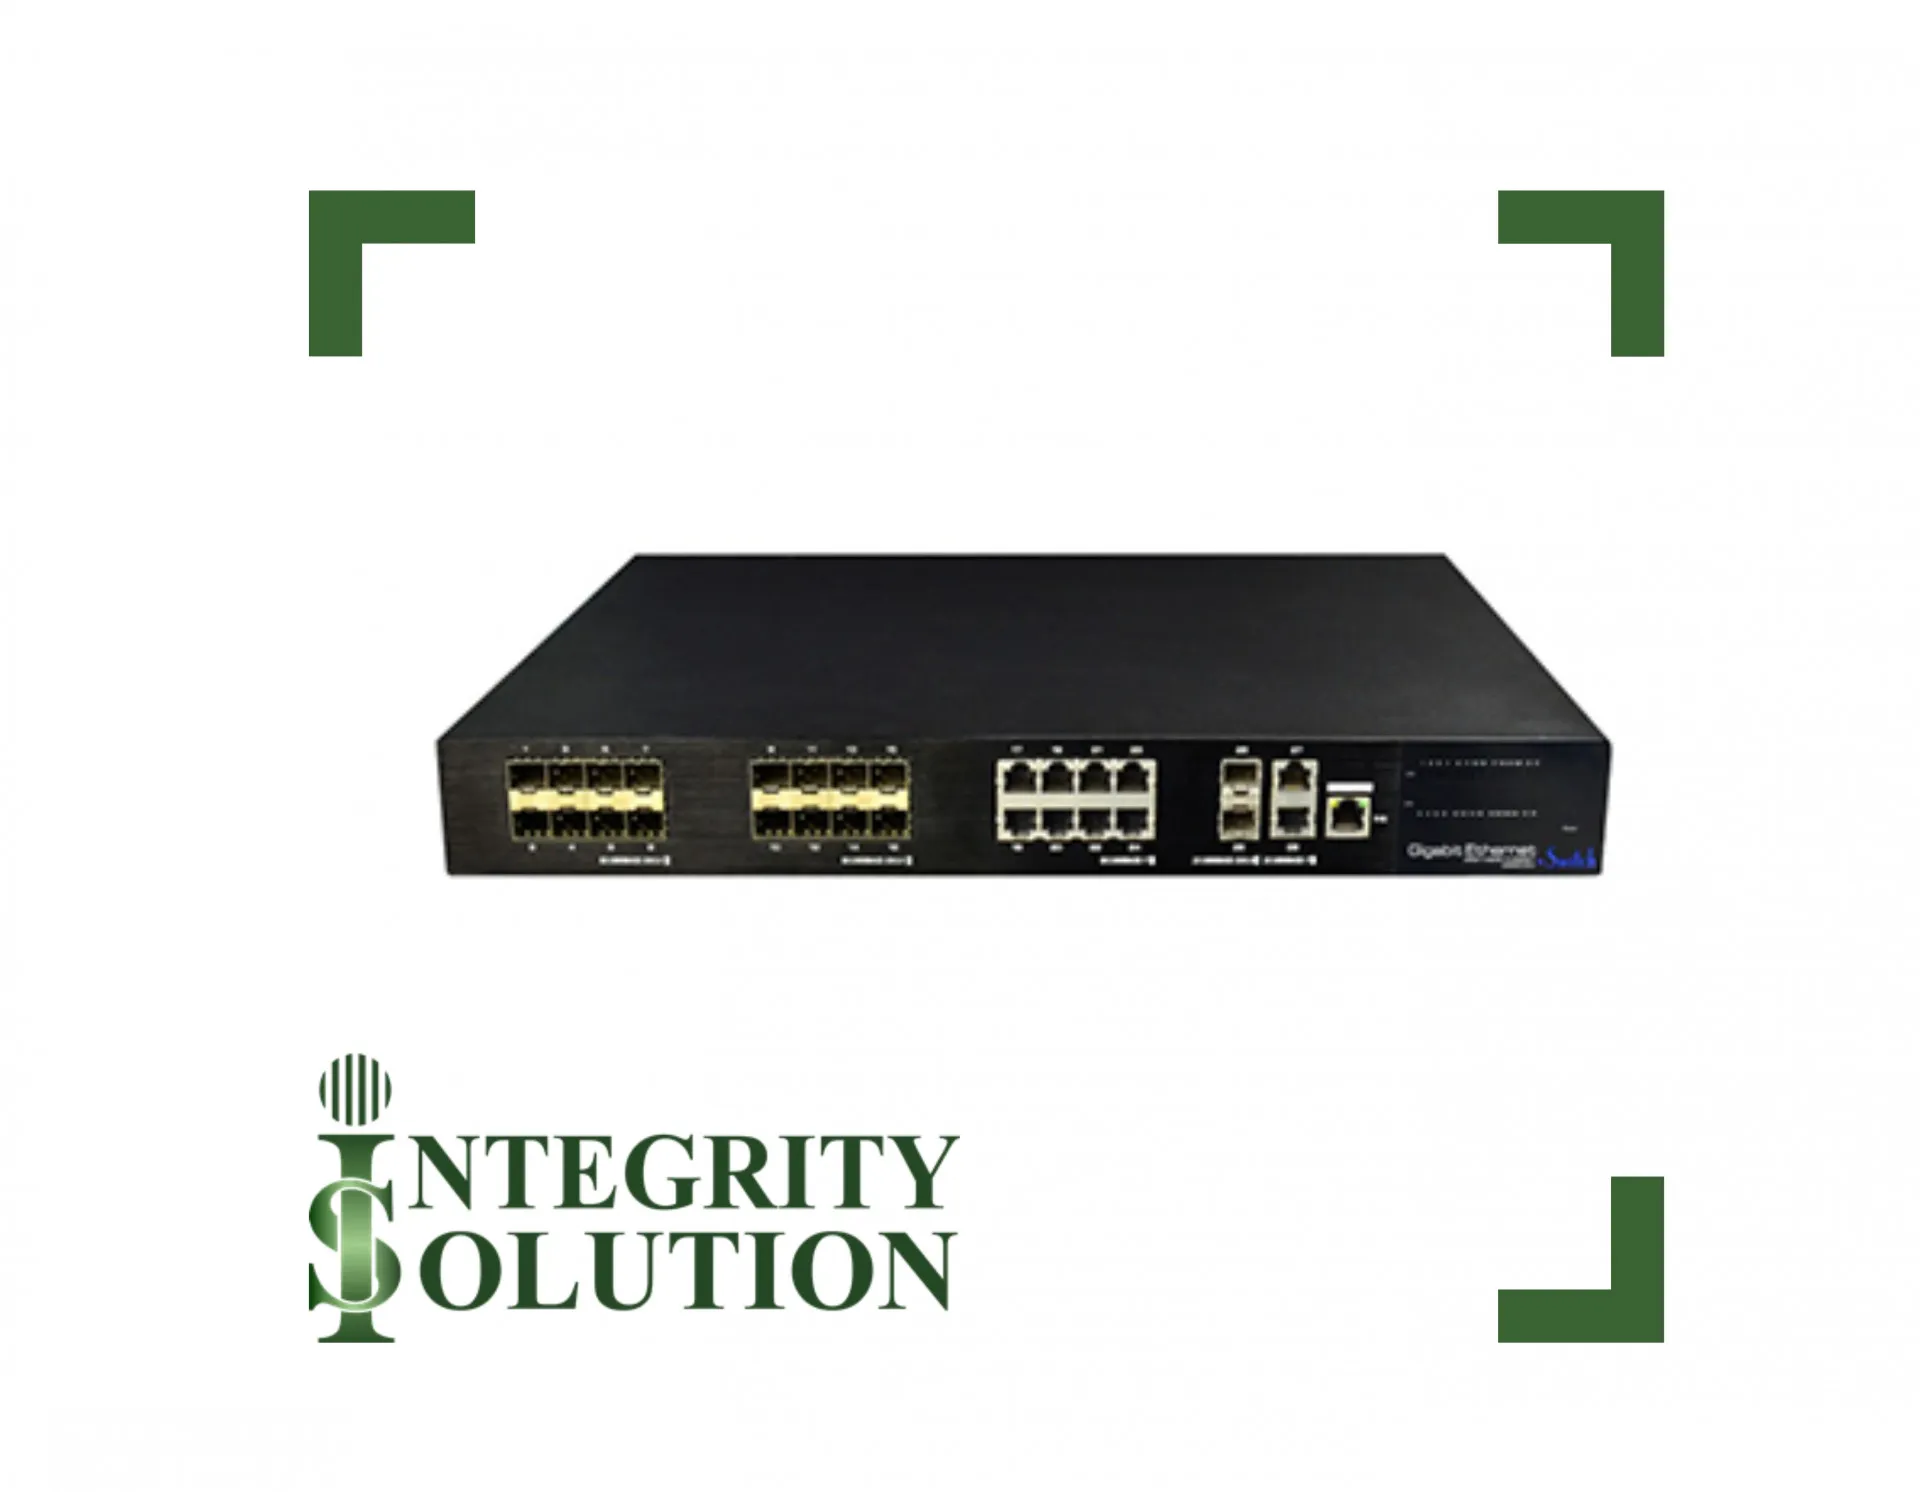 Utepo Коммутатор UTP7524GE-16GF8GT  24-портовый гигабитный,  16 SFP порта, + 8 портов RJ45, 2 uplink RJ45, 2 uplink SFP порта Integrity Solution#1